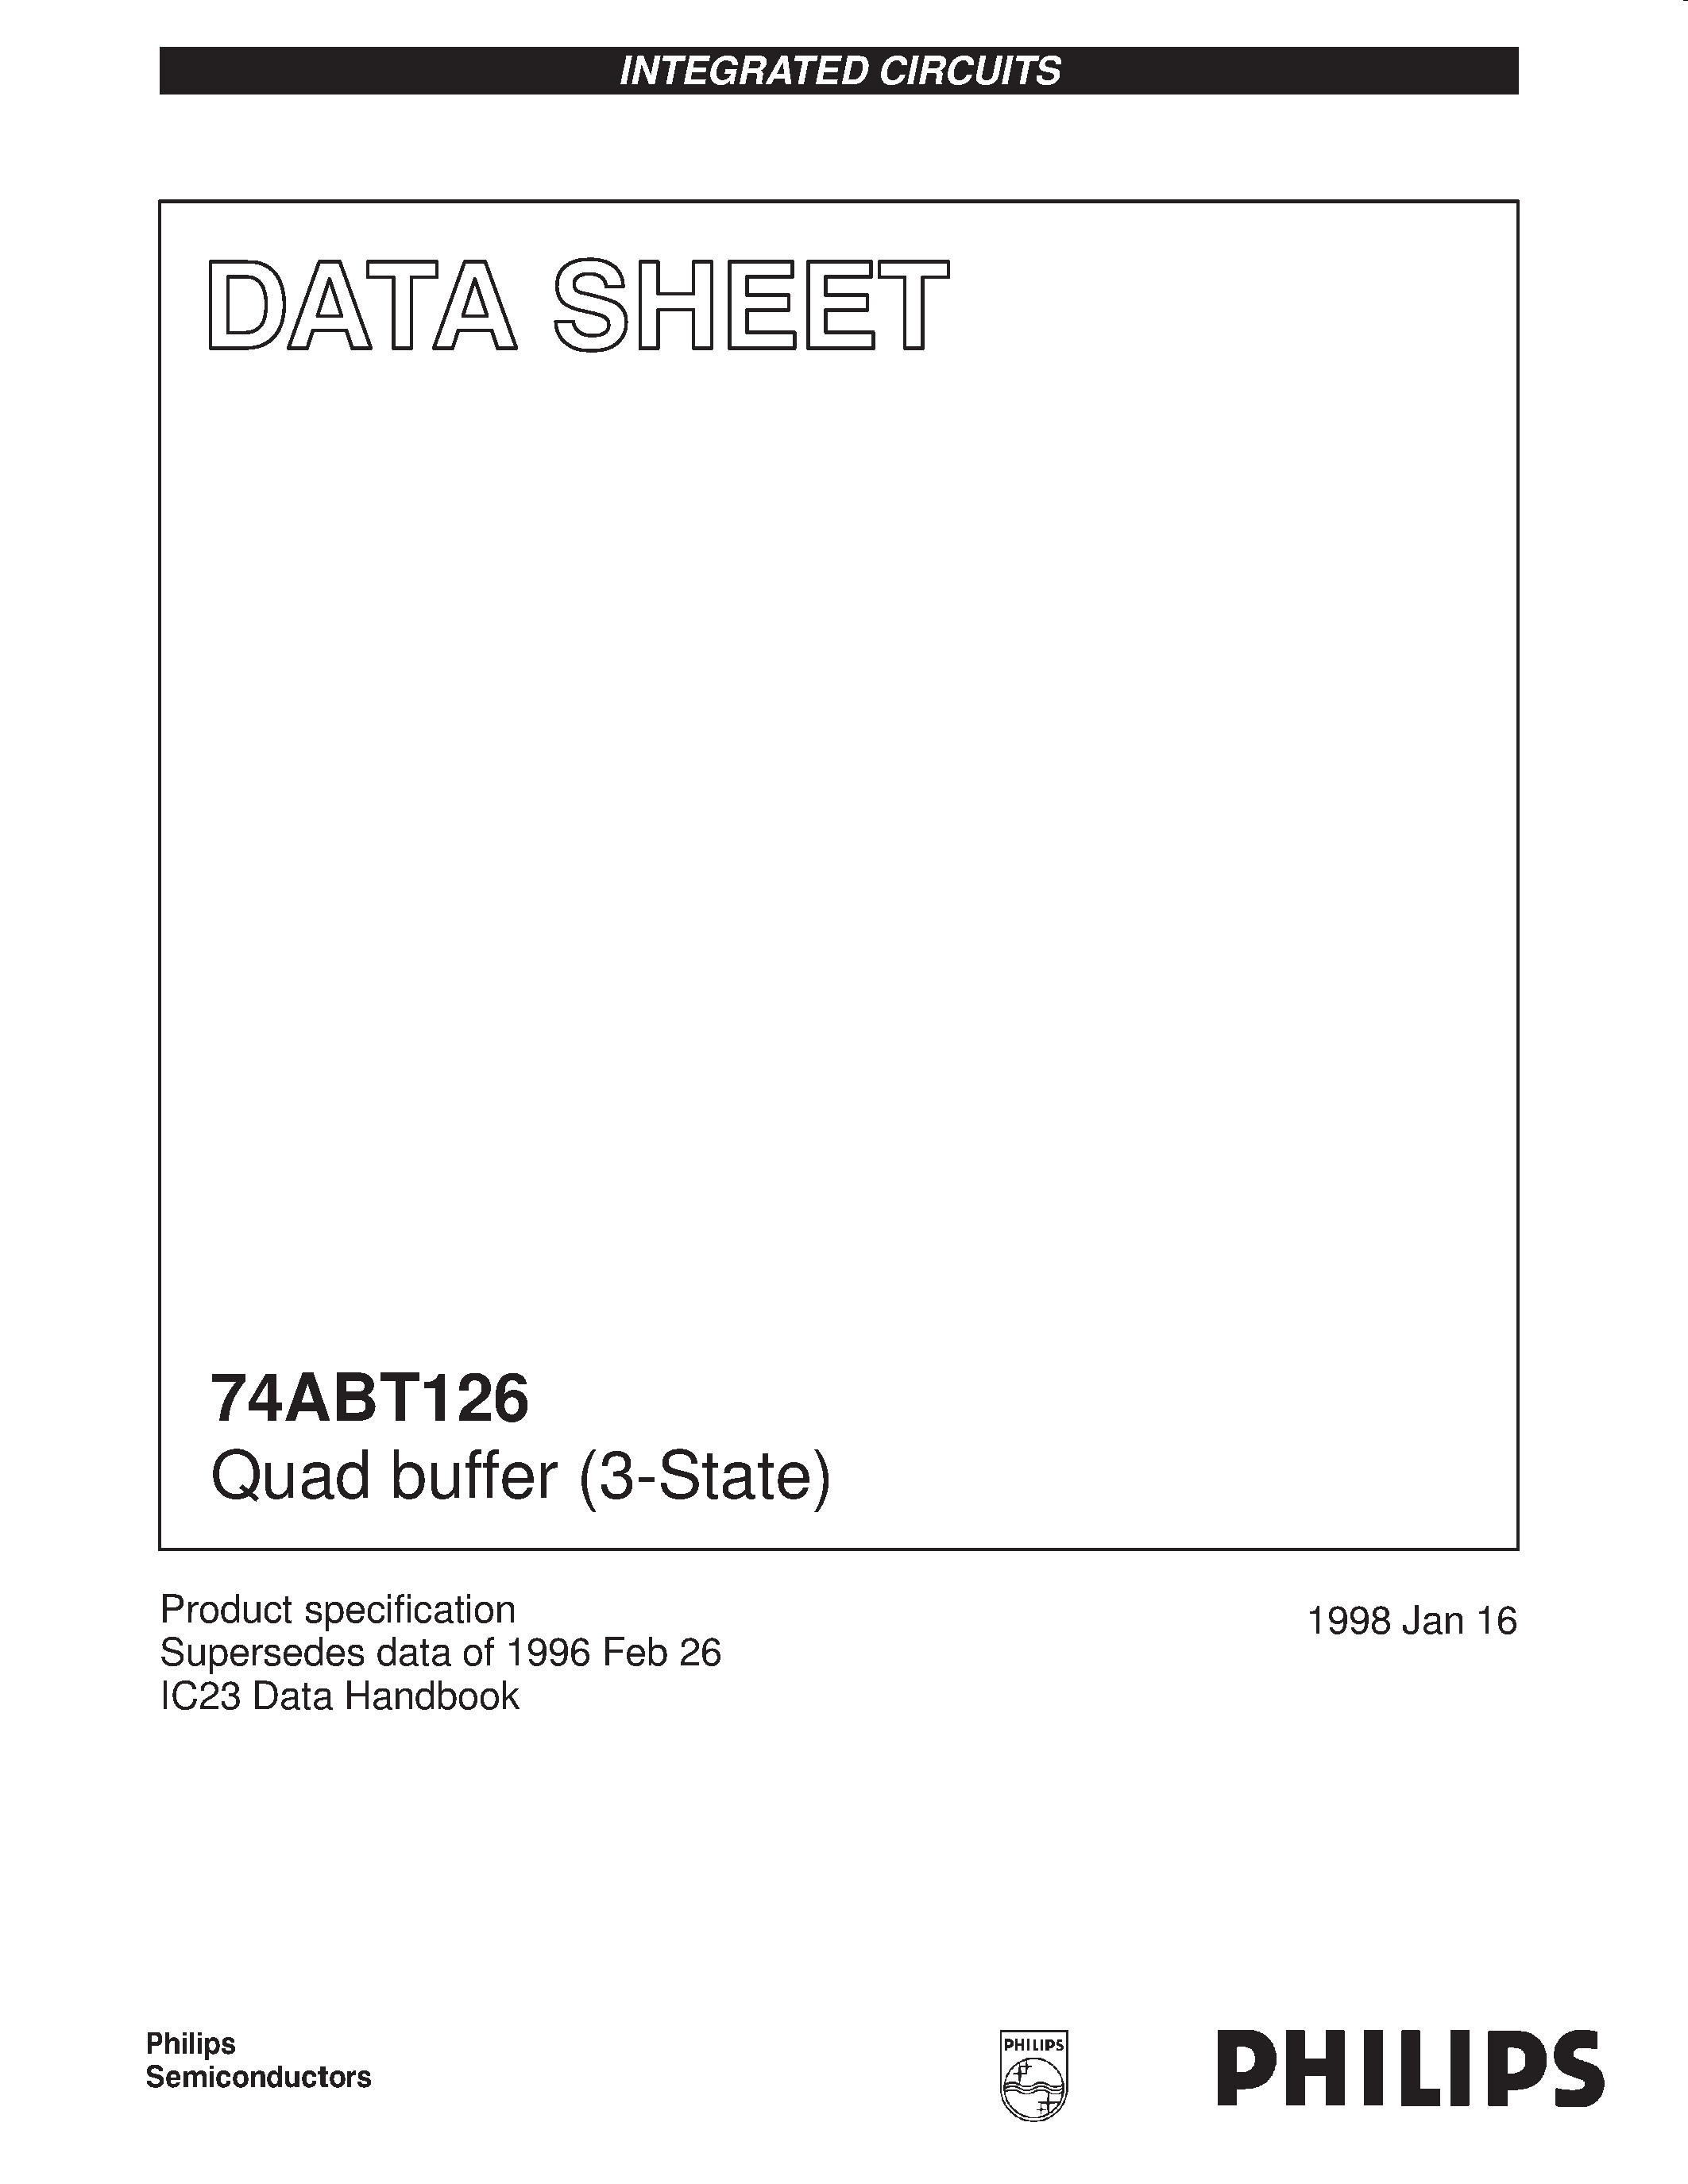 Даташит 74ABT126DB - Quad buffer 3-State страница 1